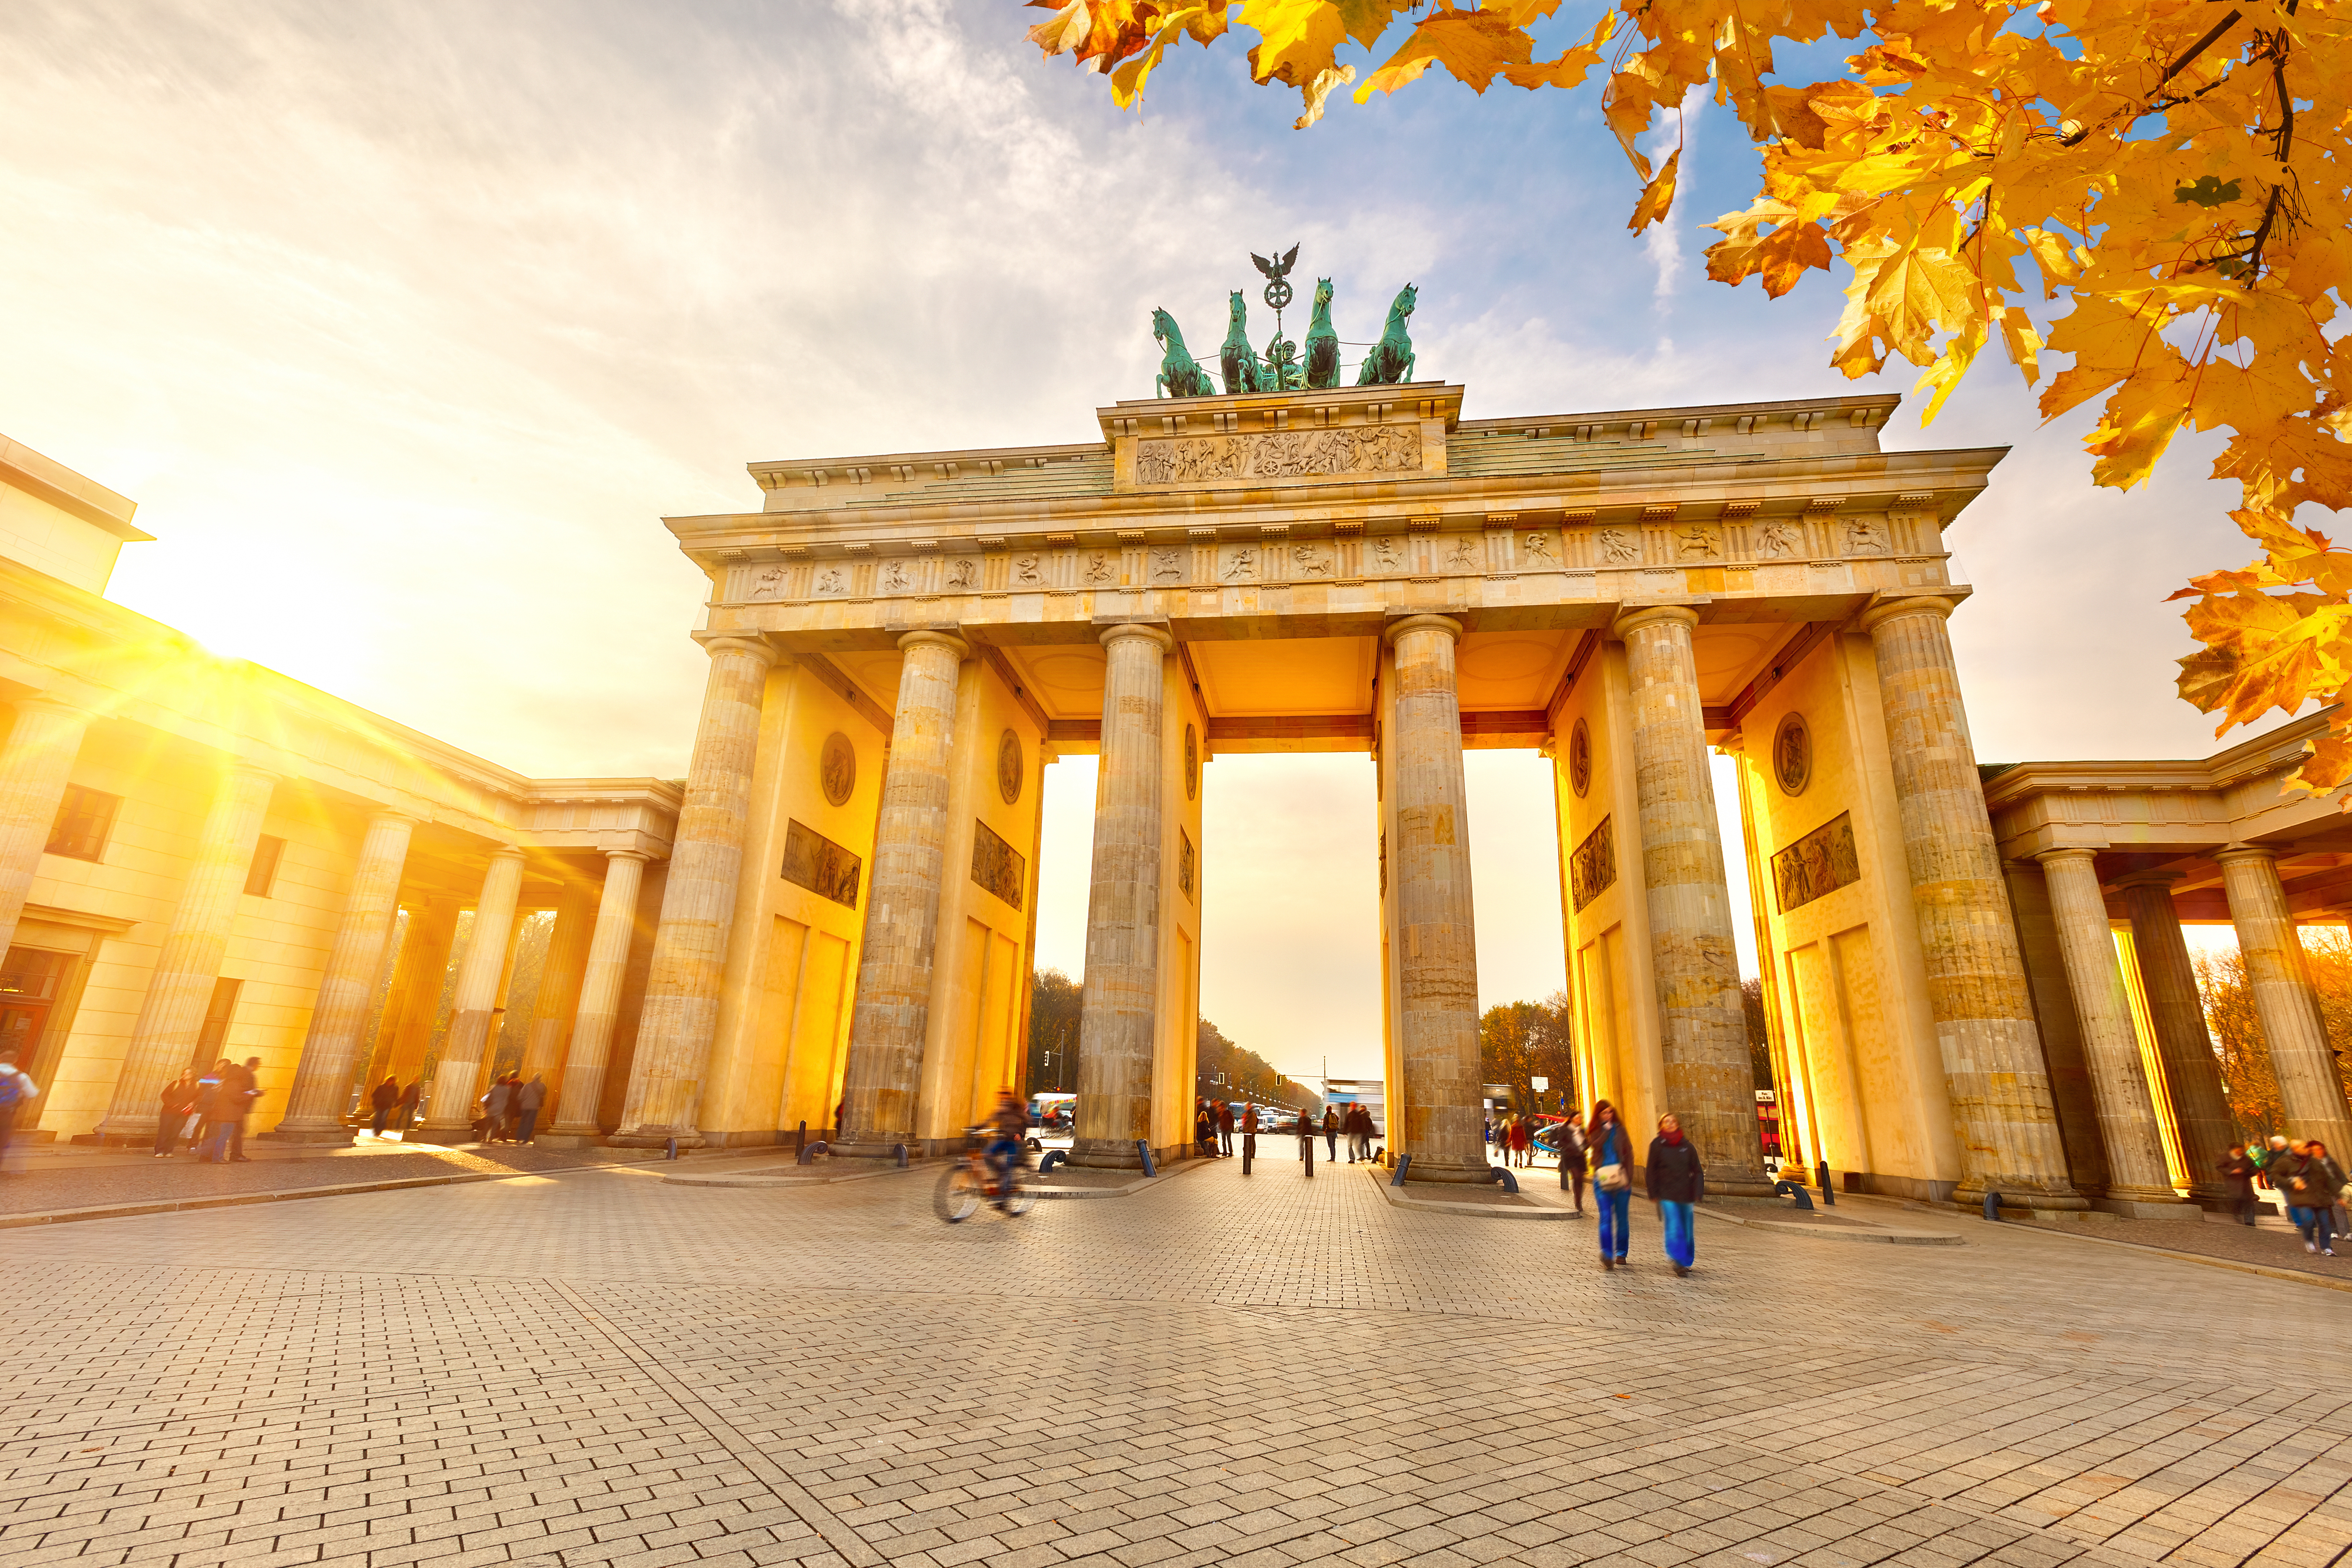 The Brandenburg Gate | Just another u.osu.edu site